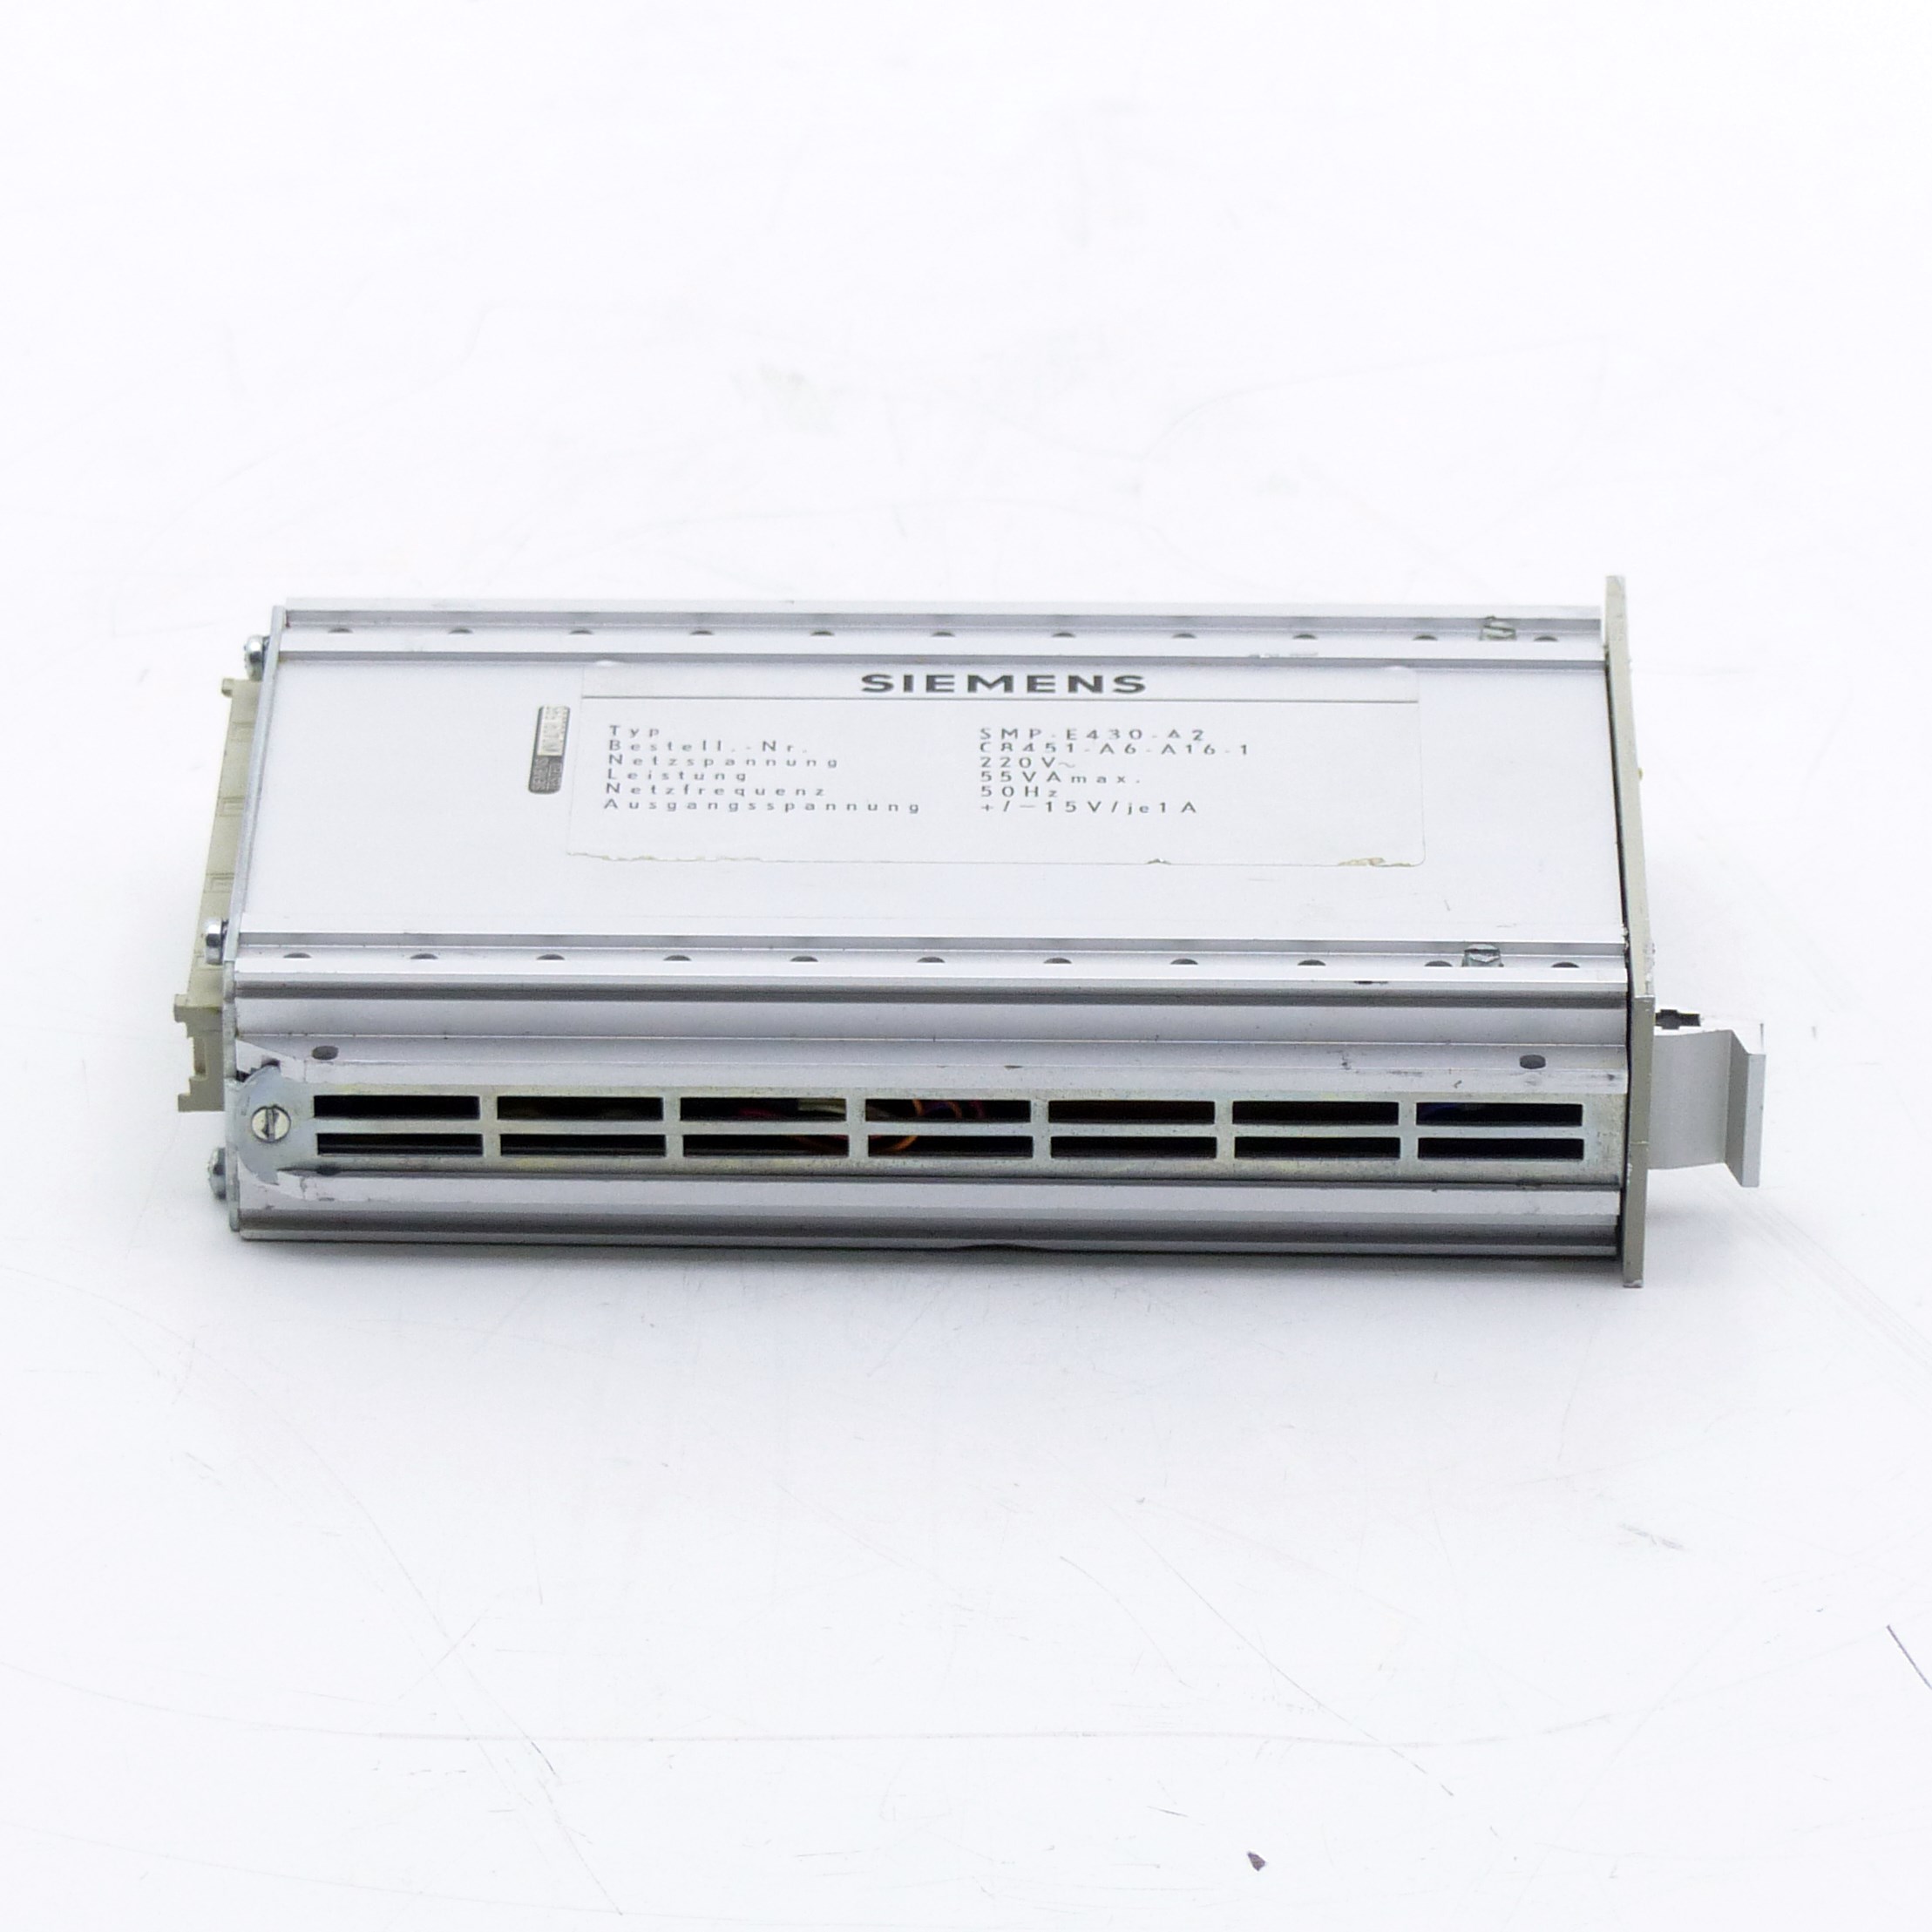 Netzteil SMP-E430-A2 